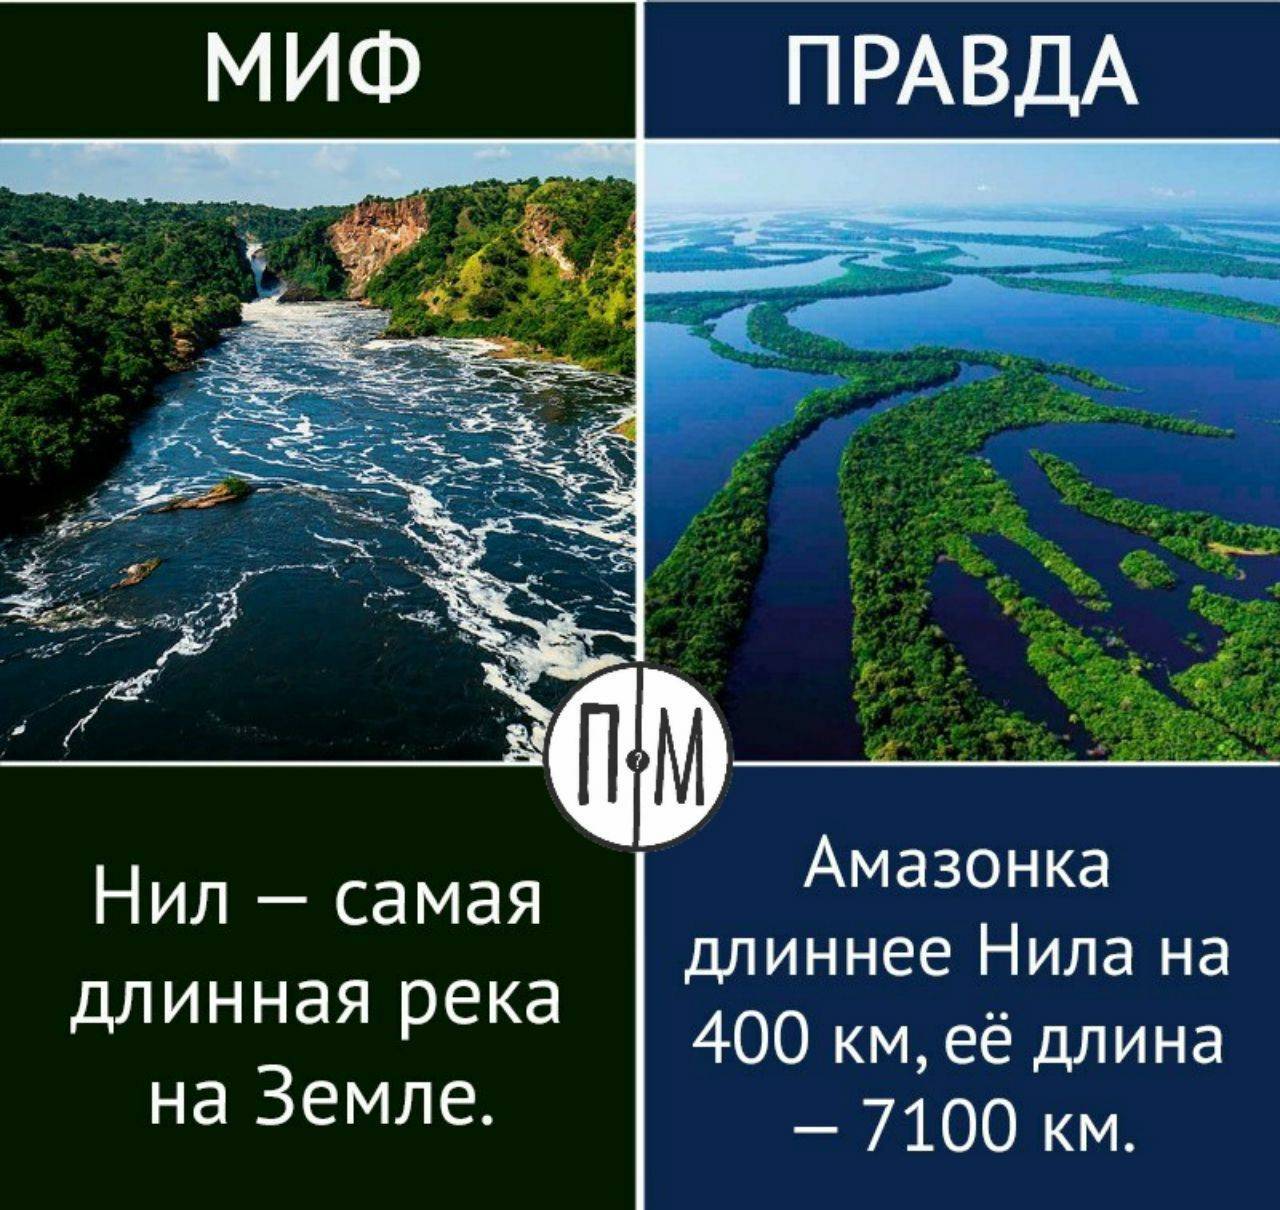 Какая самая длинная река в мире: нил или амазонка?